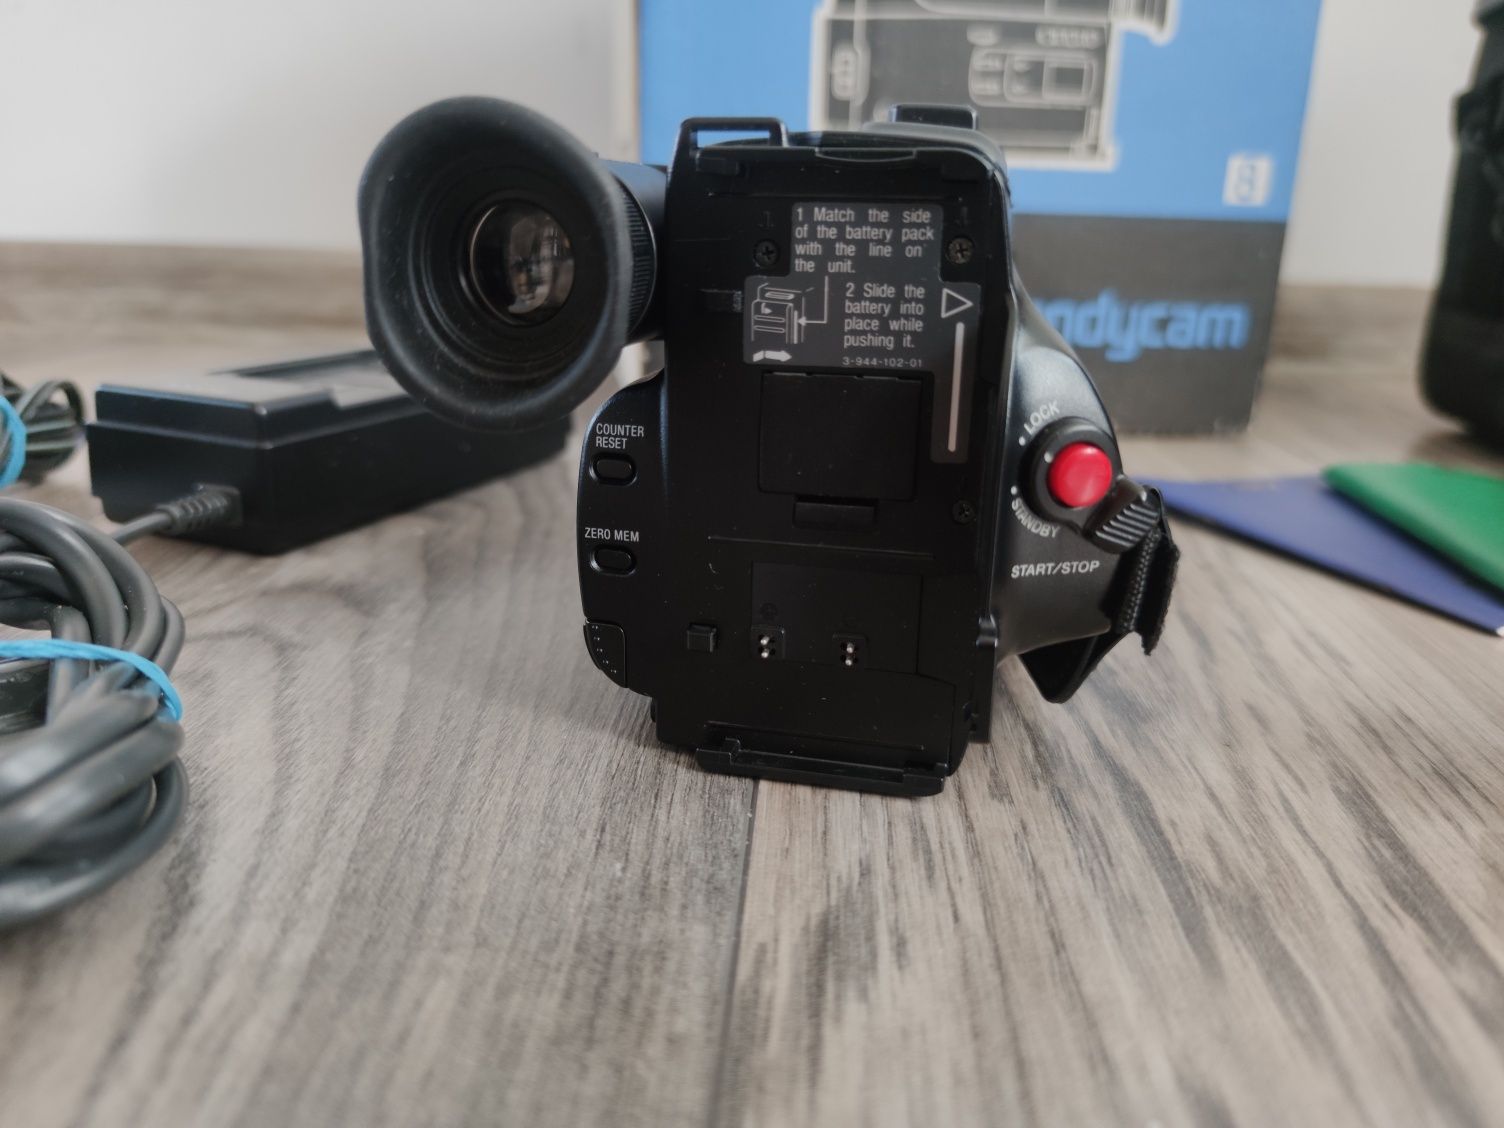 Sony CCD-TR105e kamera video 8/oryg. pudełko/ ładowarka zasilacz bater